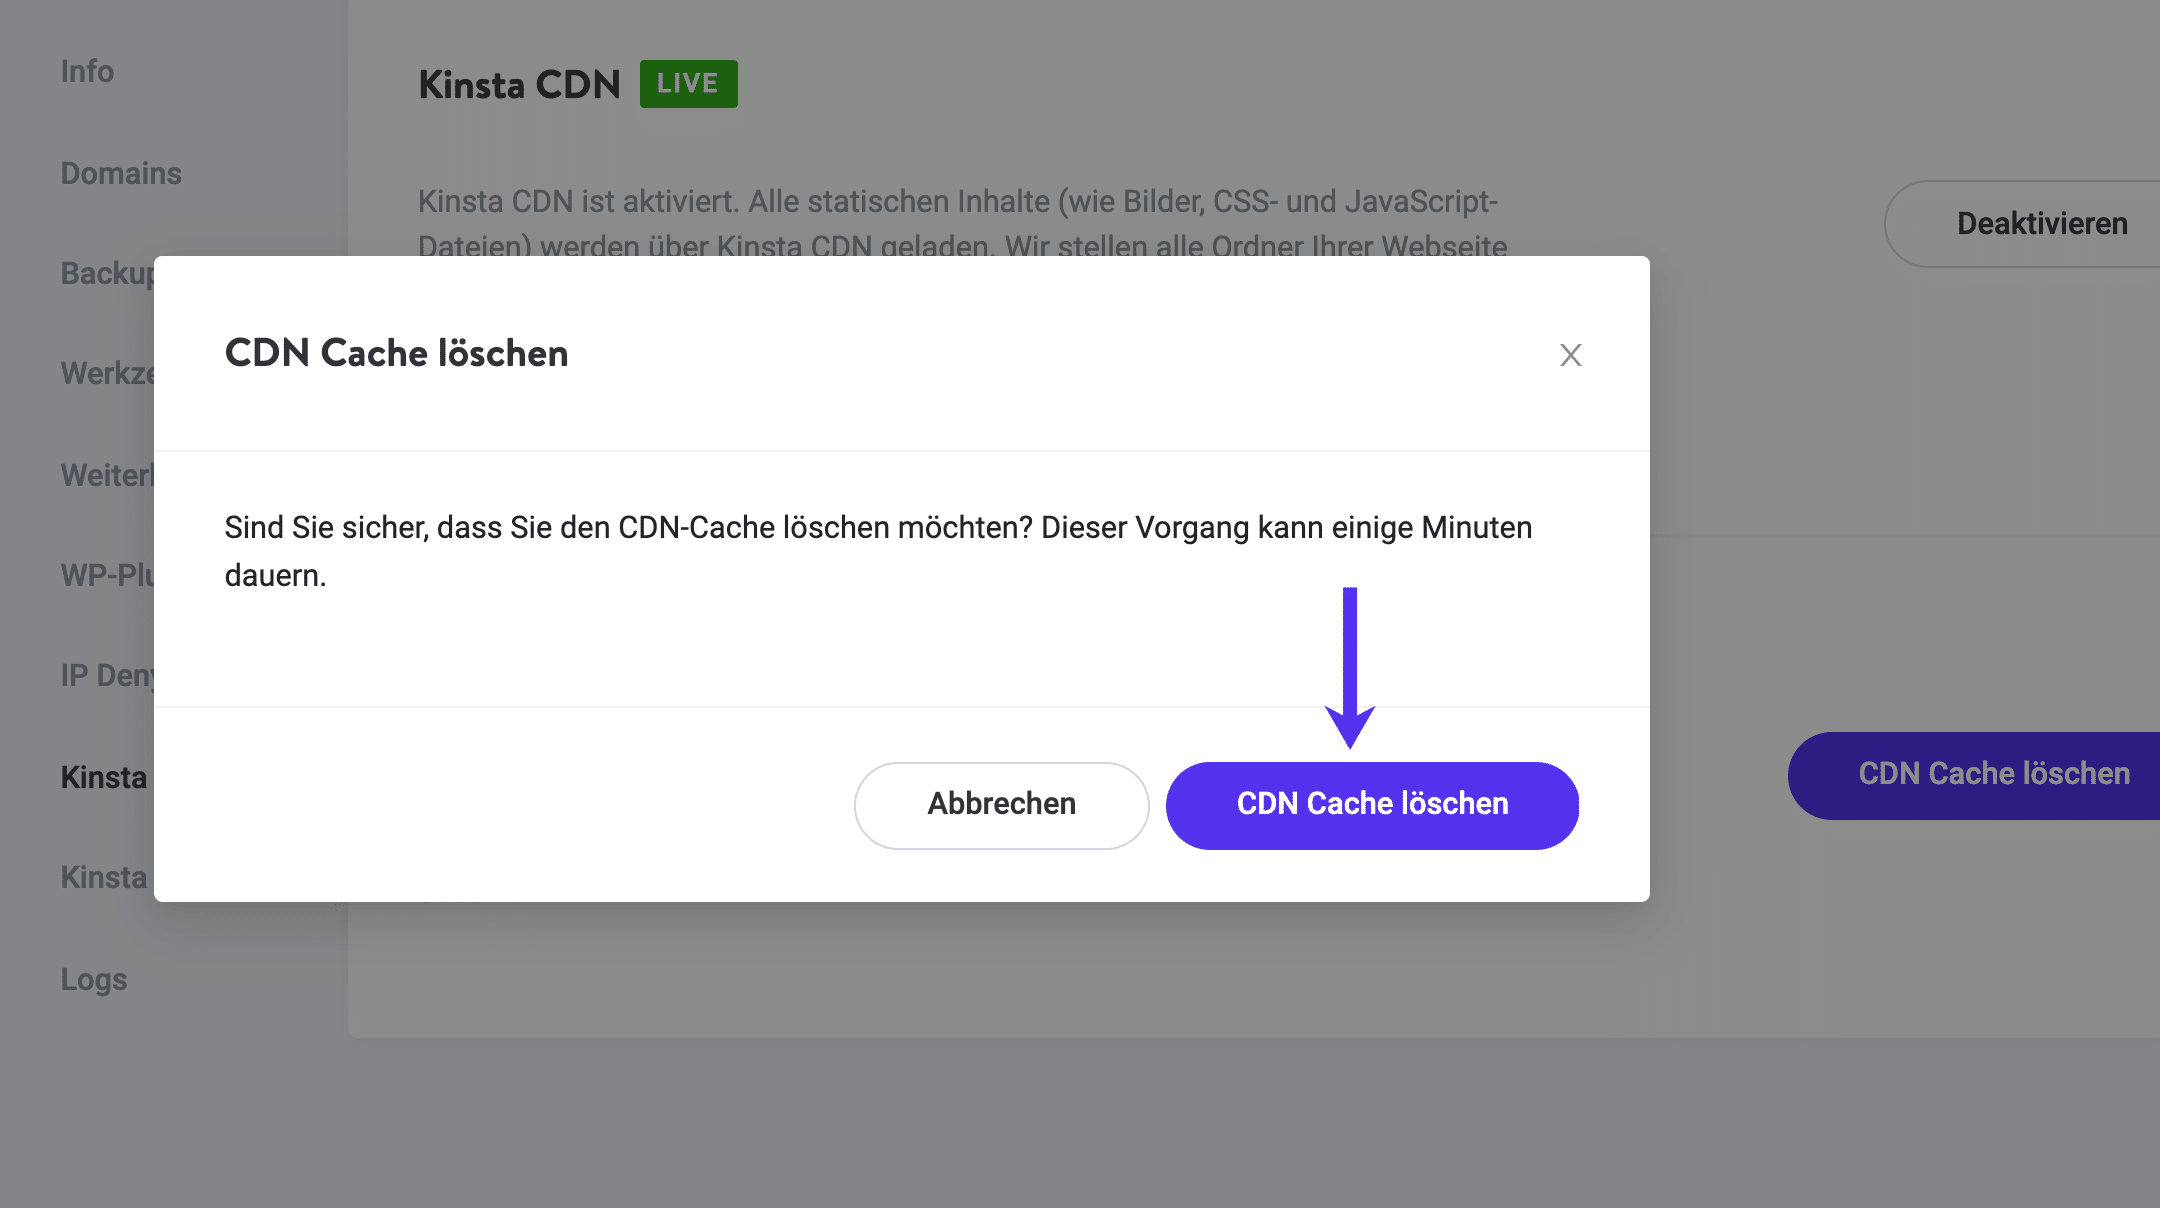 Drücke den 'CDN Cache löschen' Button